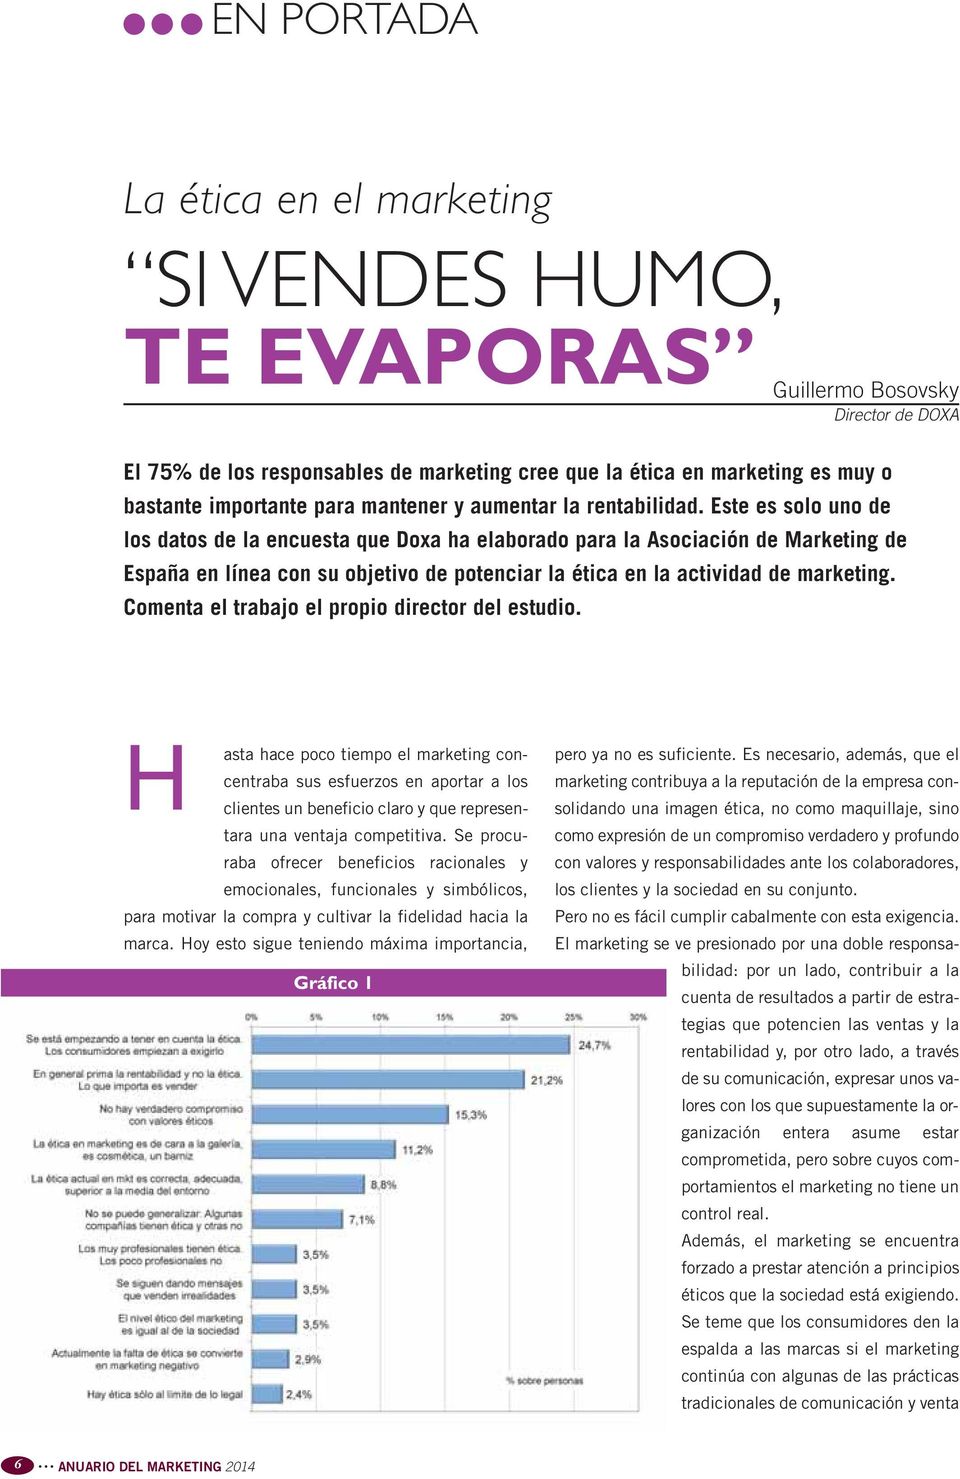 Este es solo uno de los datos de la encuesta que Doxa ha elaborado para la Asociación de Marketing de España en línea con su objetivo de potenciar la ética en la actividad de marketing.